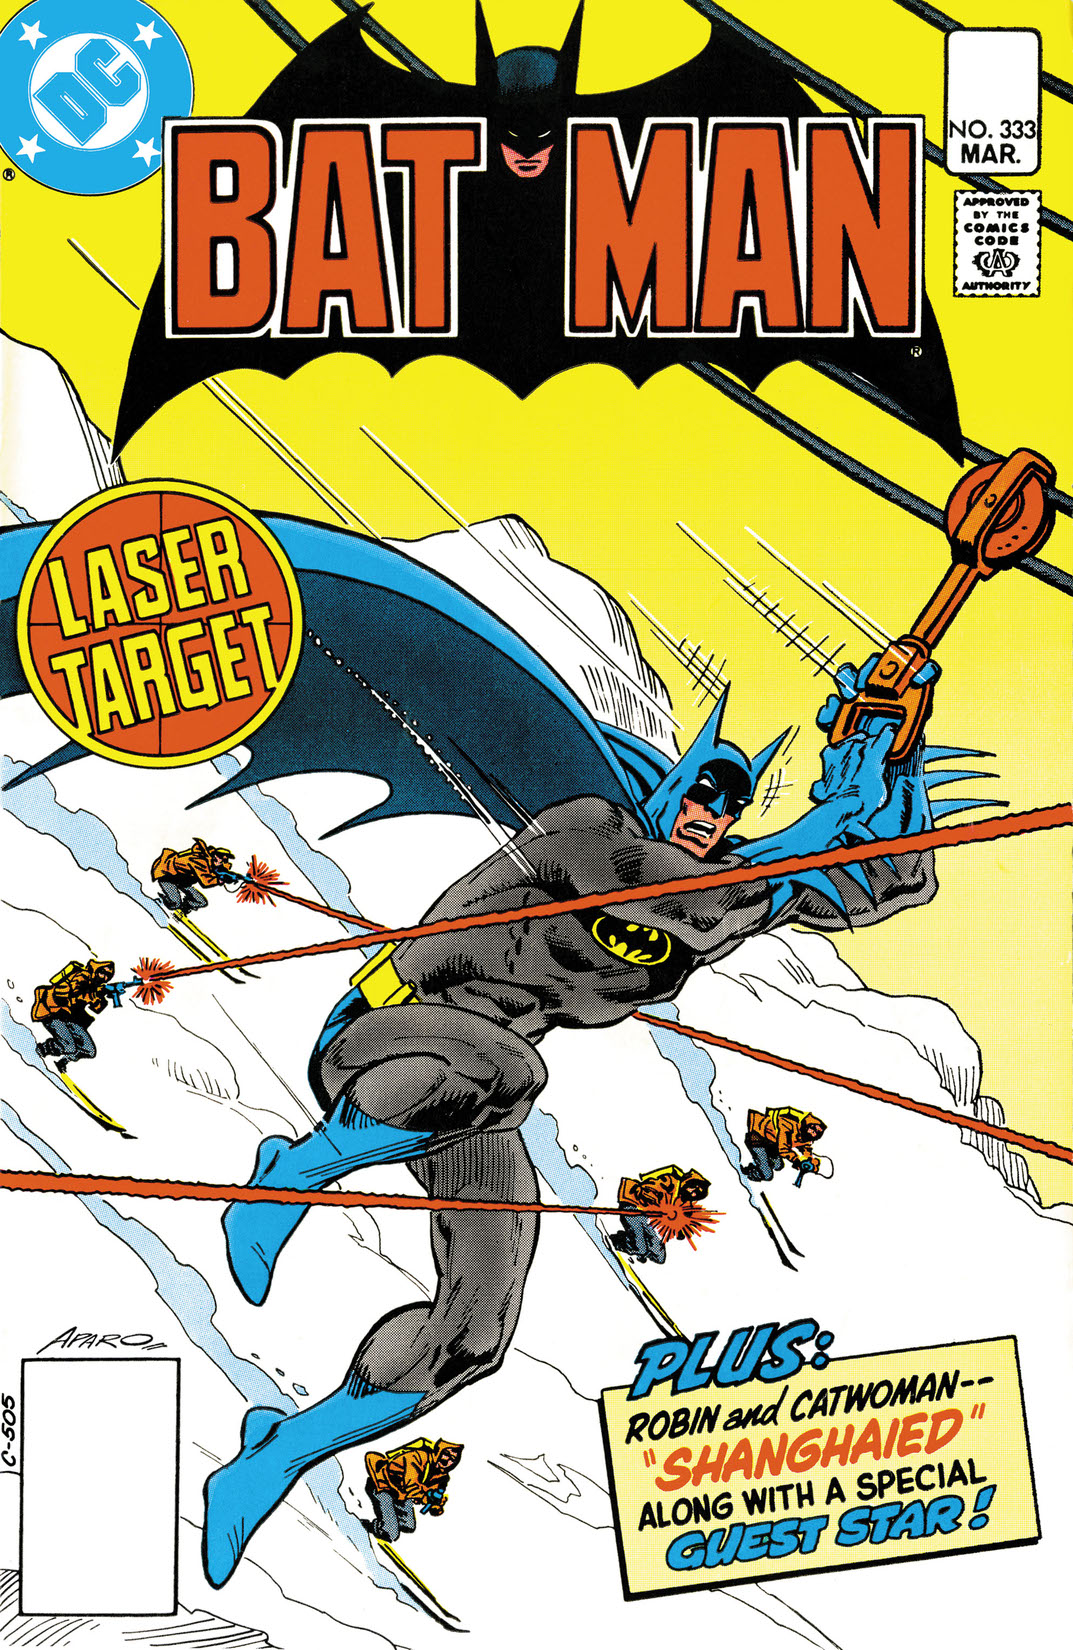 Batman (1940-) #333 preview images